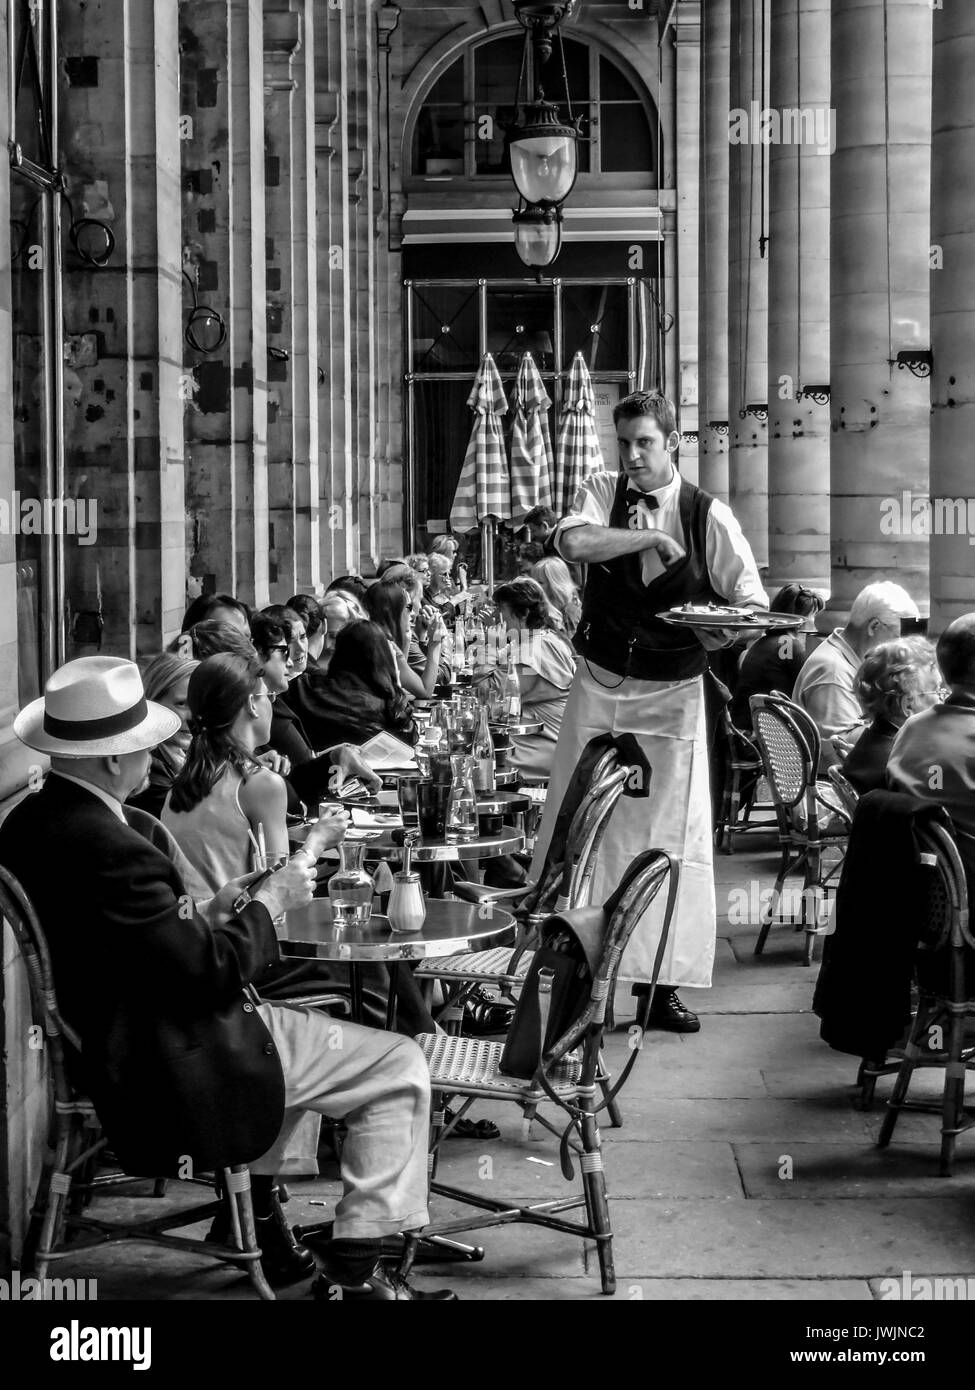 PARIS FRANKREICH - GARCON L'hinaus! - Pariser CAFE TERRASSE-KELLNER CAFE PARIS - PALAIS ROYAL PARIS © Frédéric BEAUMONT Stockfoto